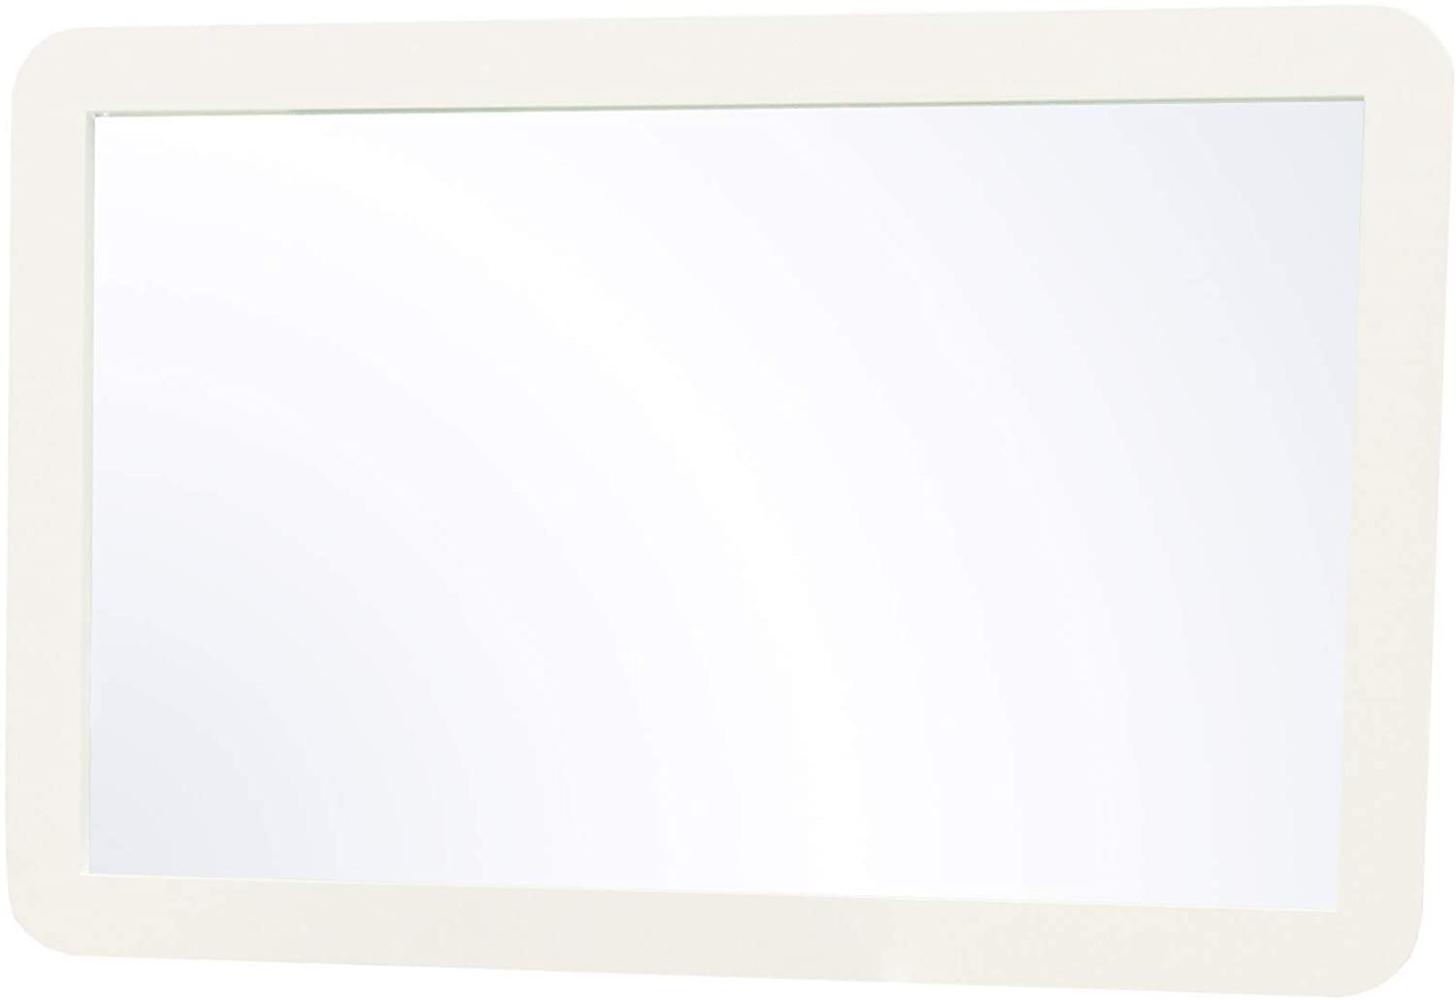 Prana - Spiegel, Wandspiegel mit Rahmen, abgerundete Kanten, weiss hochglanz Bild 1